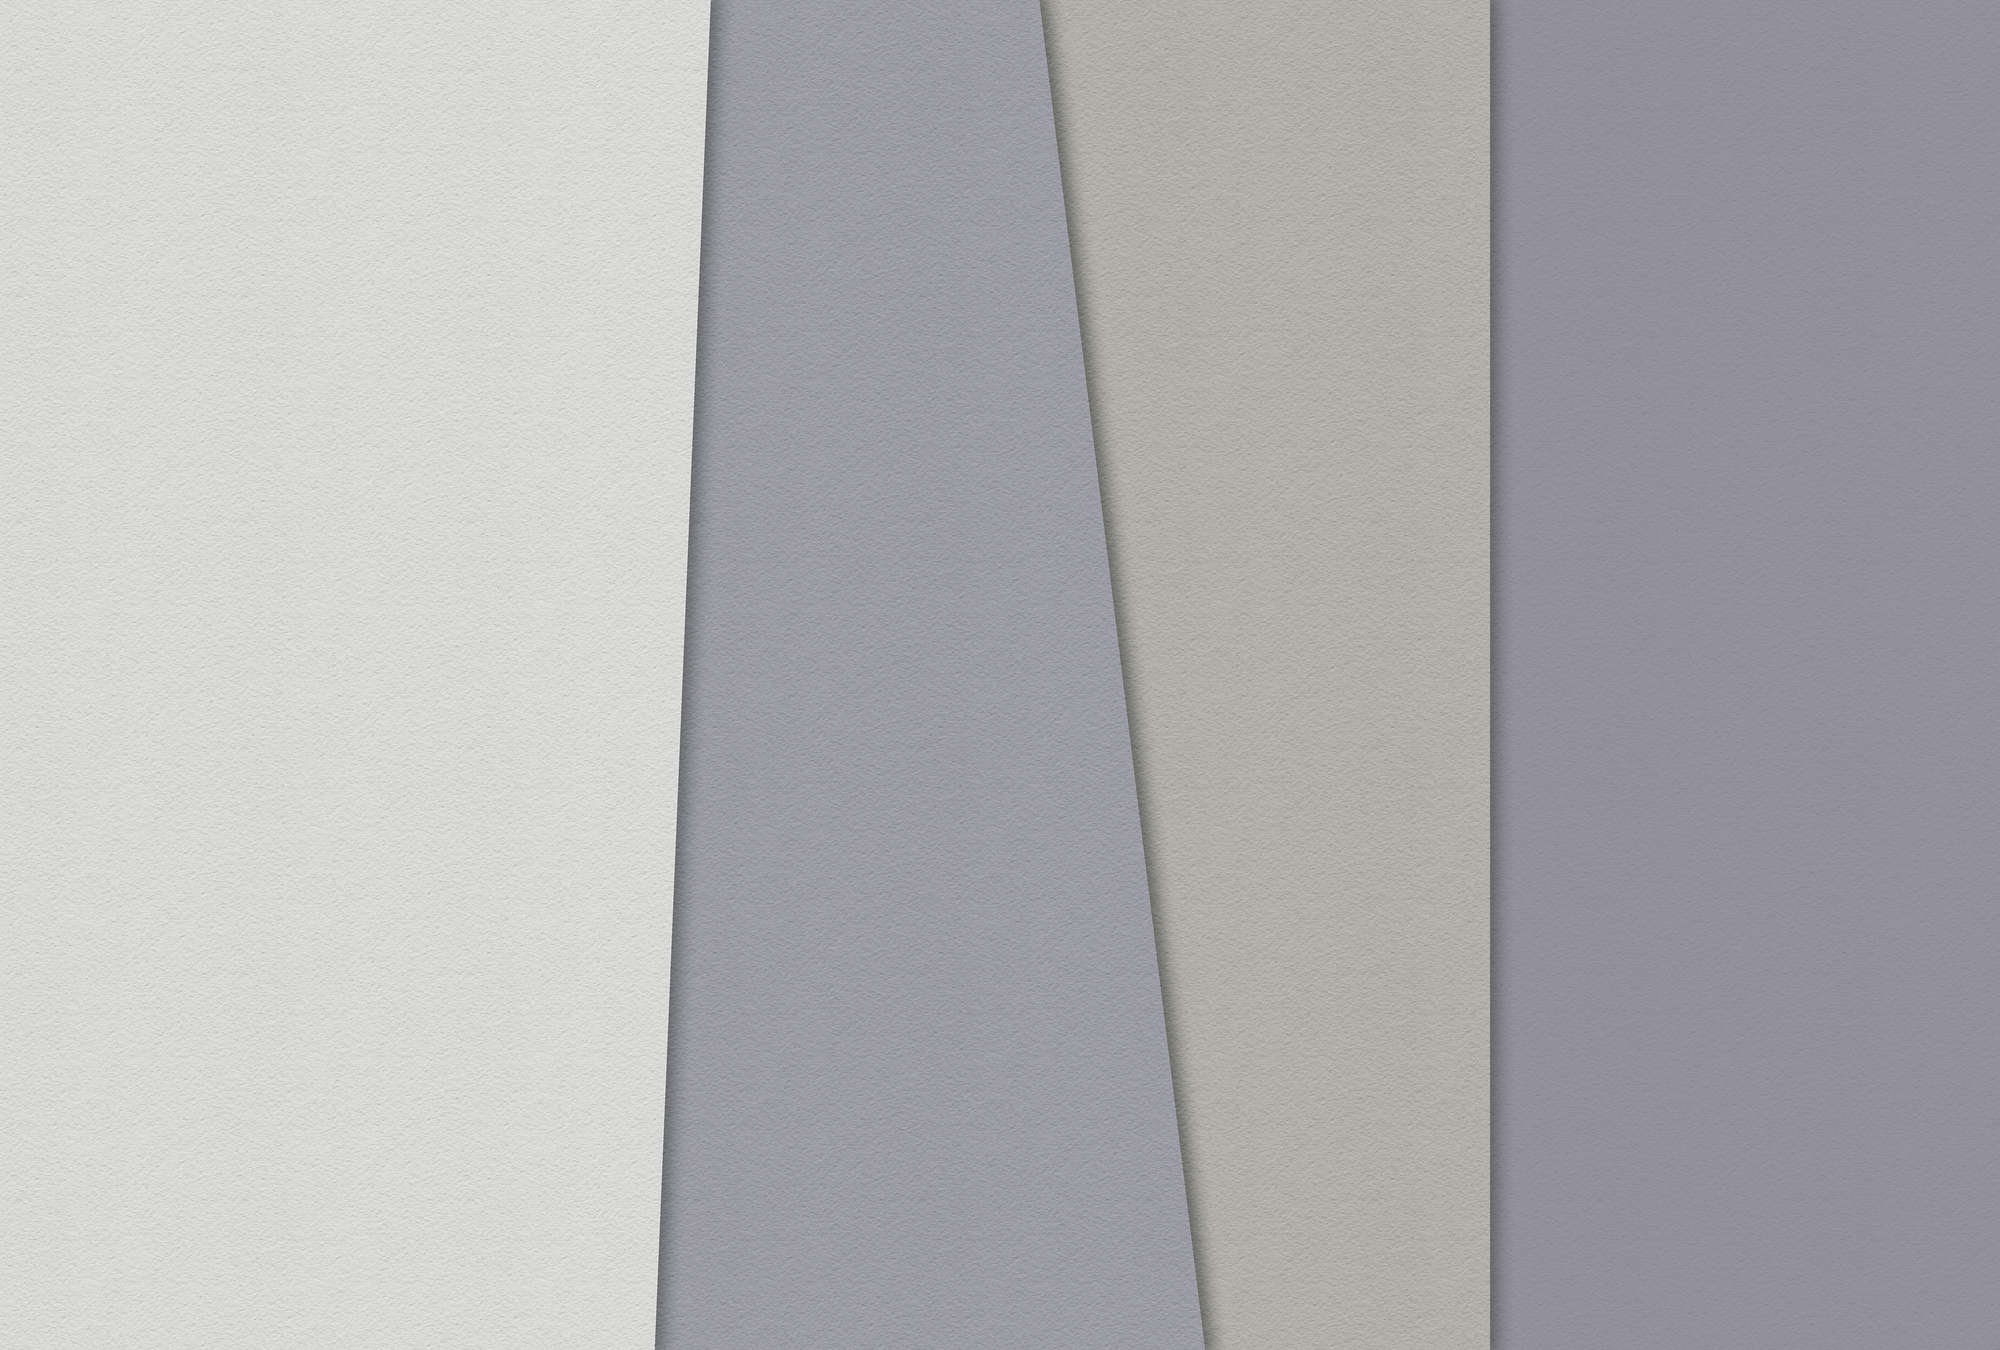             Layered paper 2 - papier peint graphique, structure de papier à la cuve design minimaliste - crème, vert | nacre intissé lisse
        